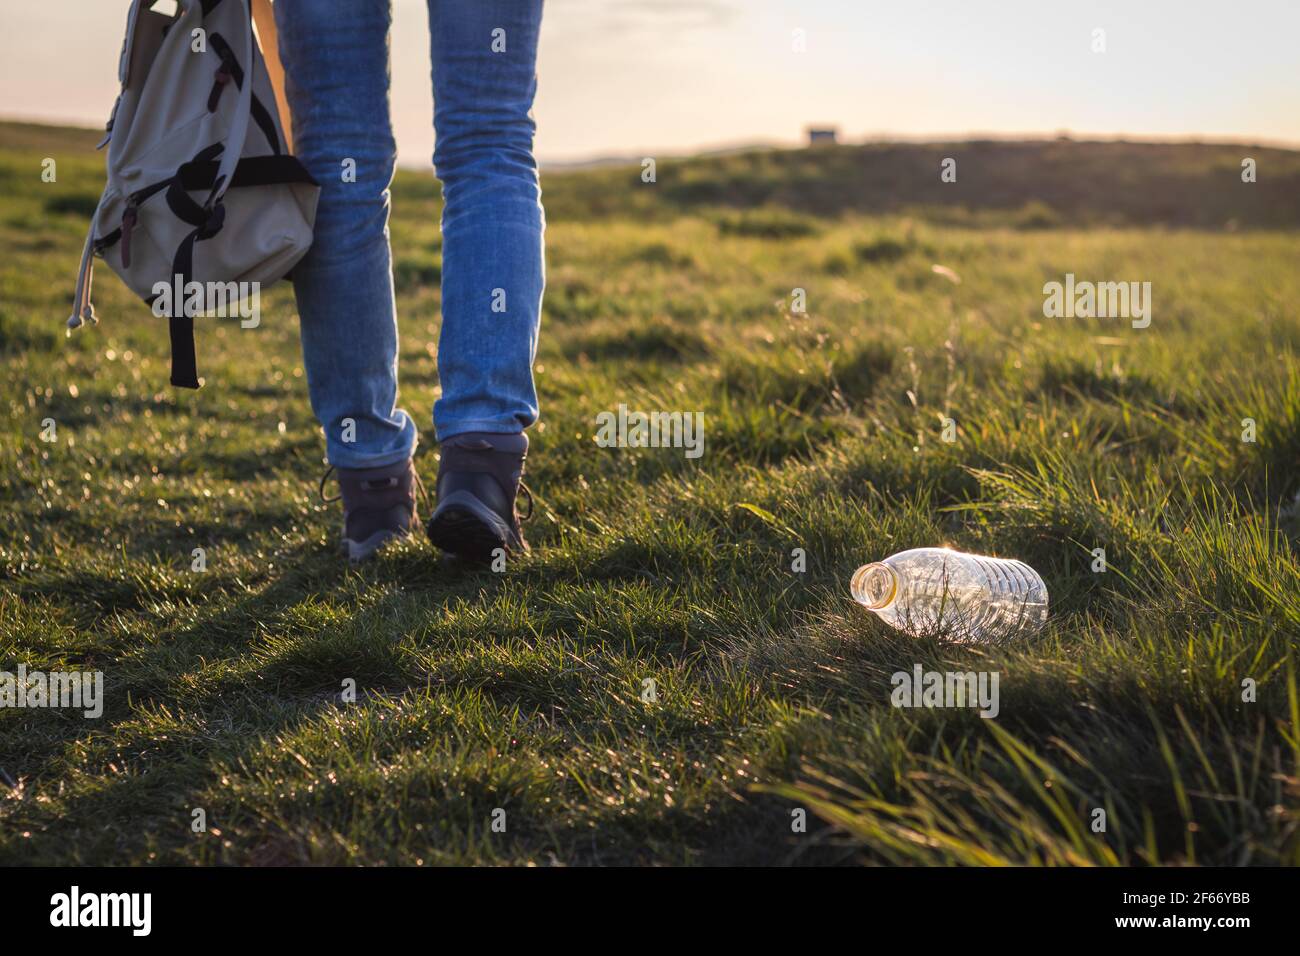 Contaminación del medio ambiente plástico. Hiker caminando lejos de la botella de plástico en la hierba. Personas irresponsables y conservación del medio ambiente Foto de stock